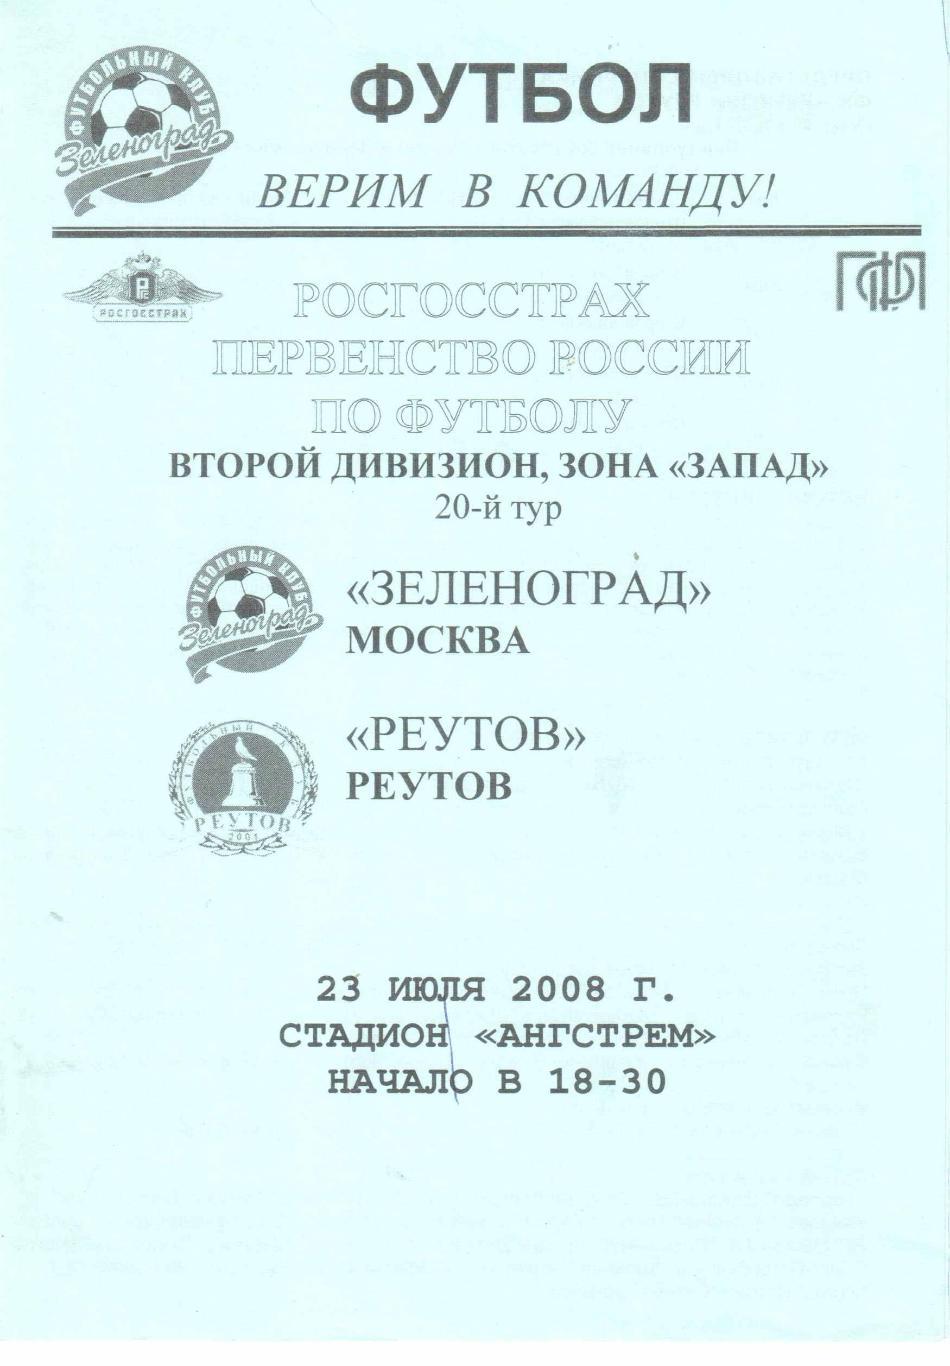 Зеленоград Москва - Реутов Реутов 23.07.2008